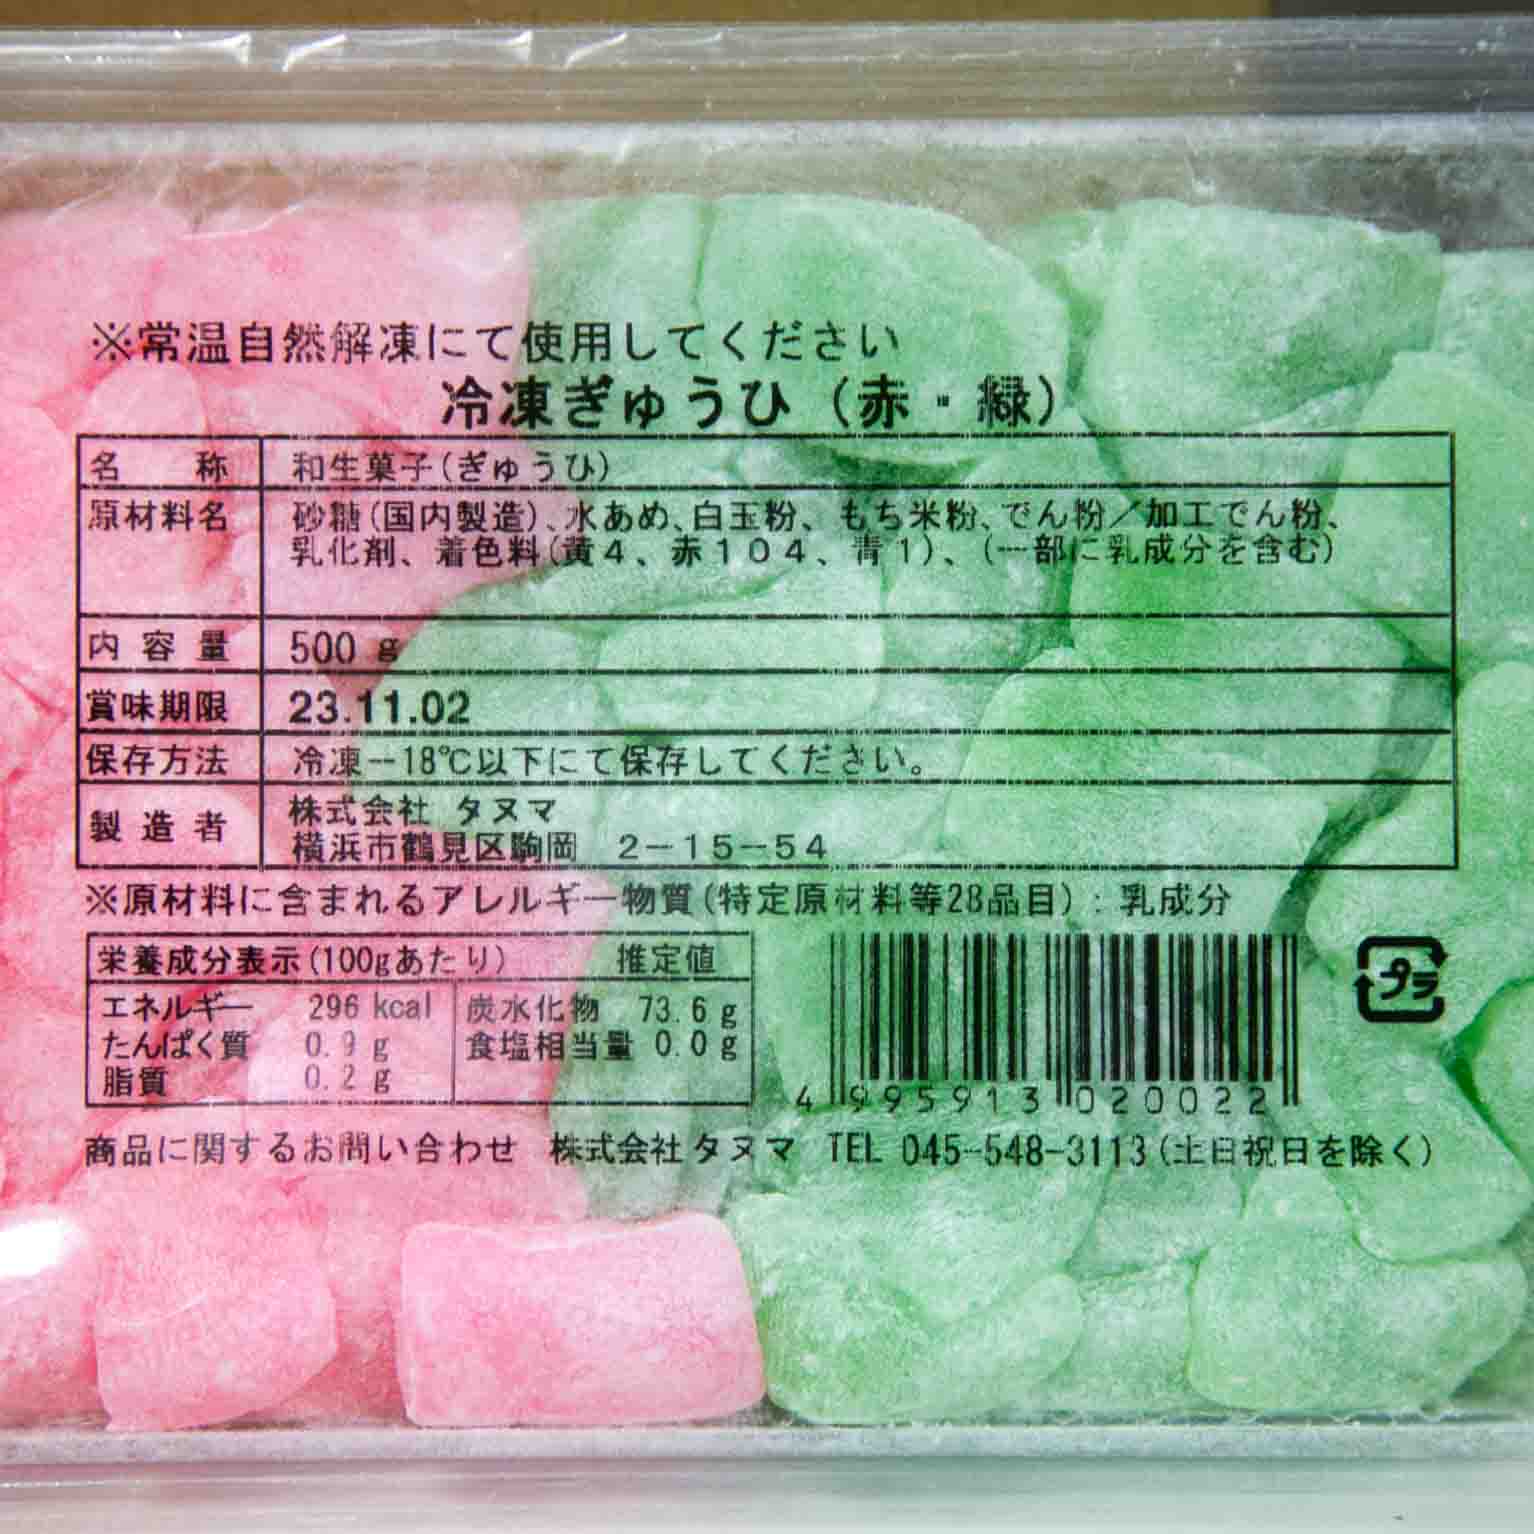 冷凍求肥(赤・緑) 500